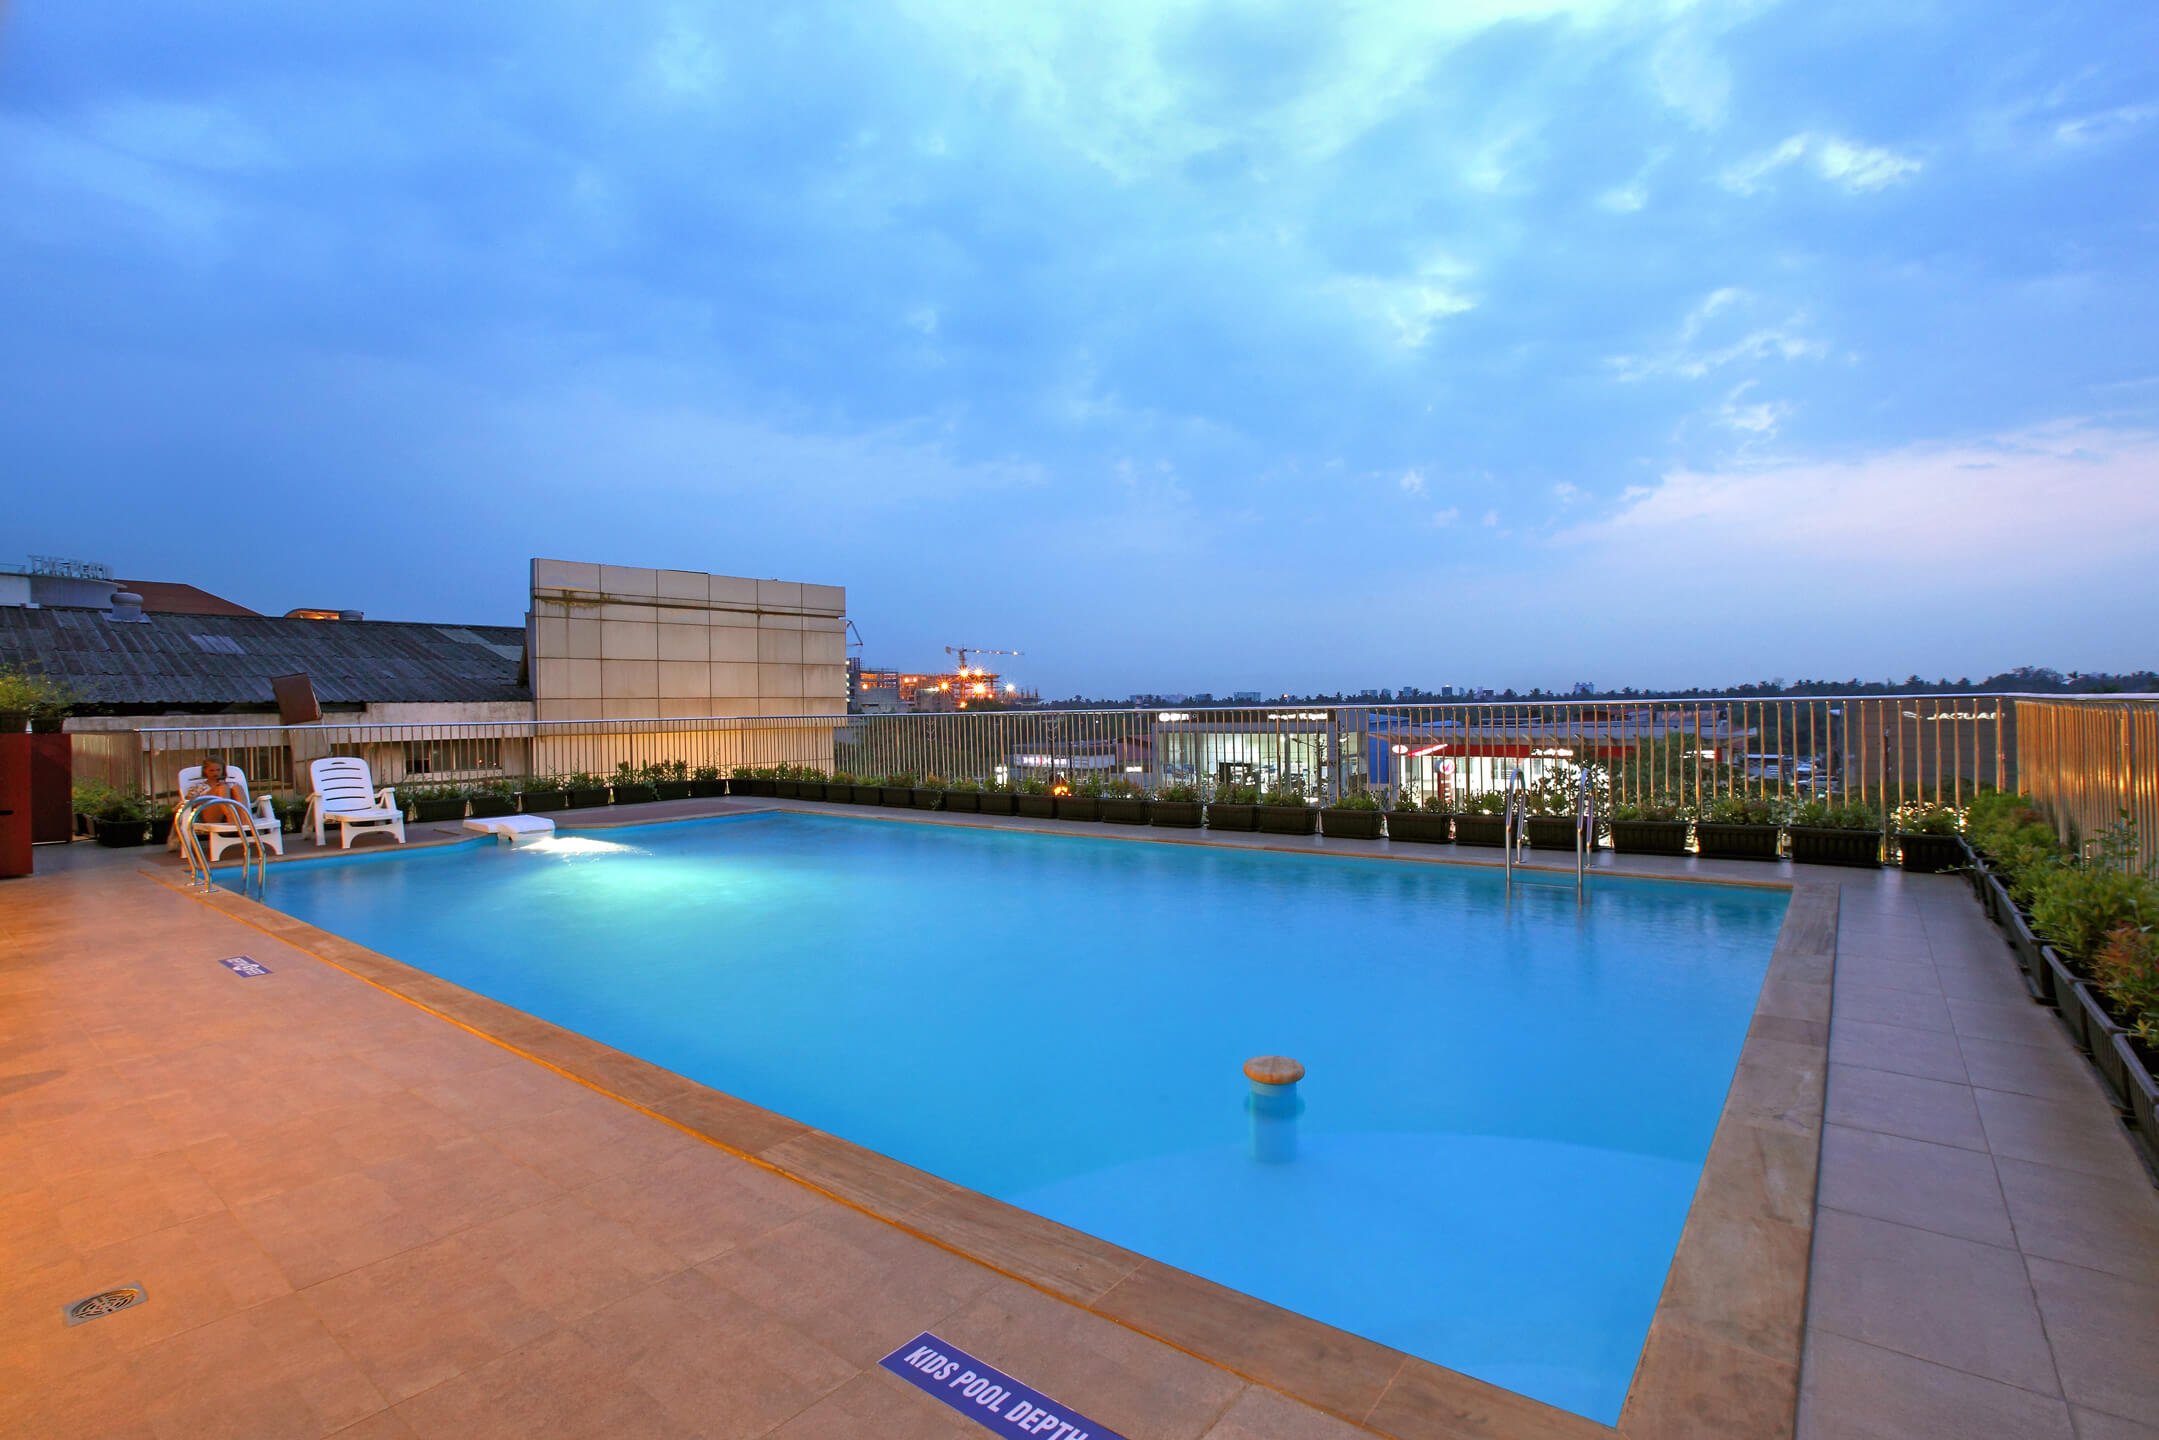 Luxury Hotels in Kochi